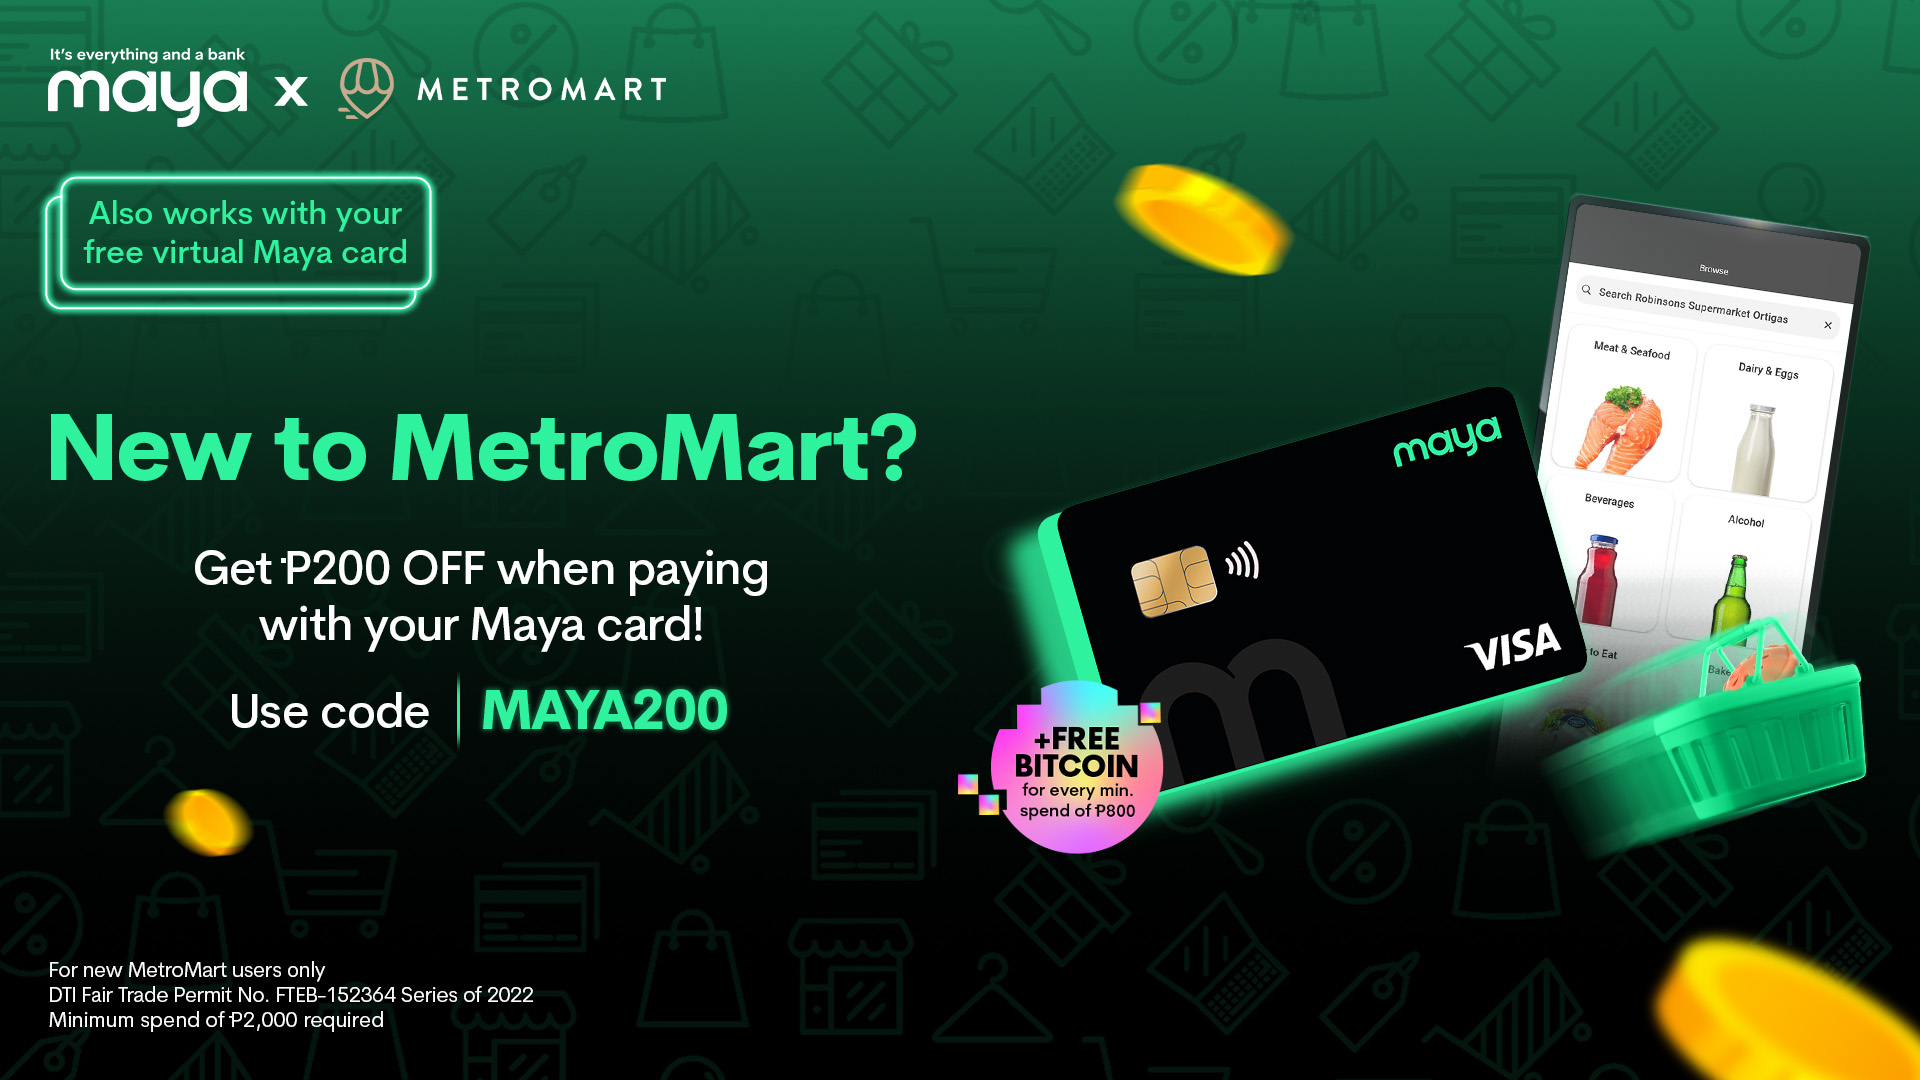 101922 - Metromart Maya Exclusive 1920 x 1080 Deals